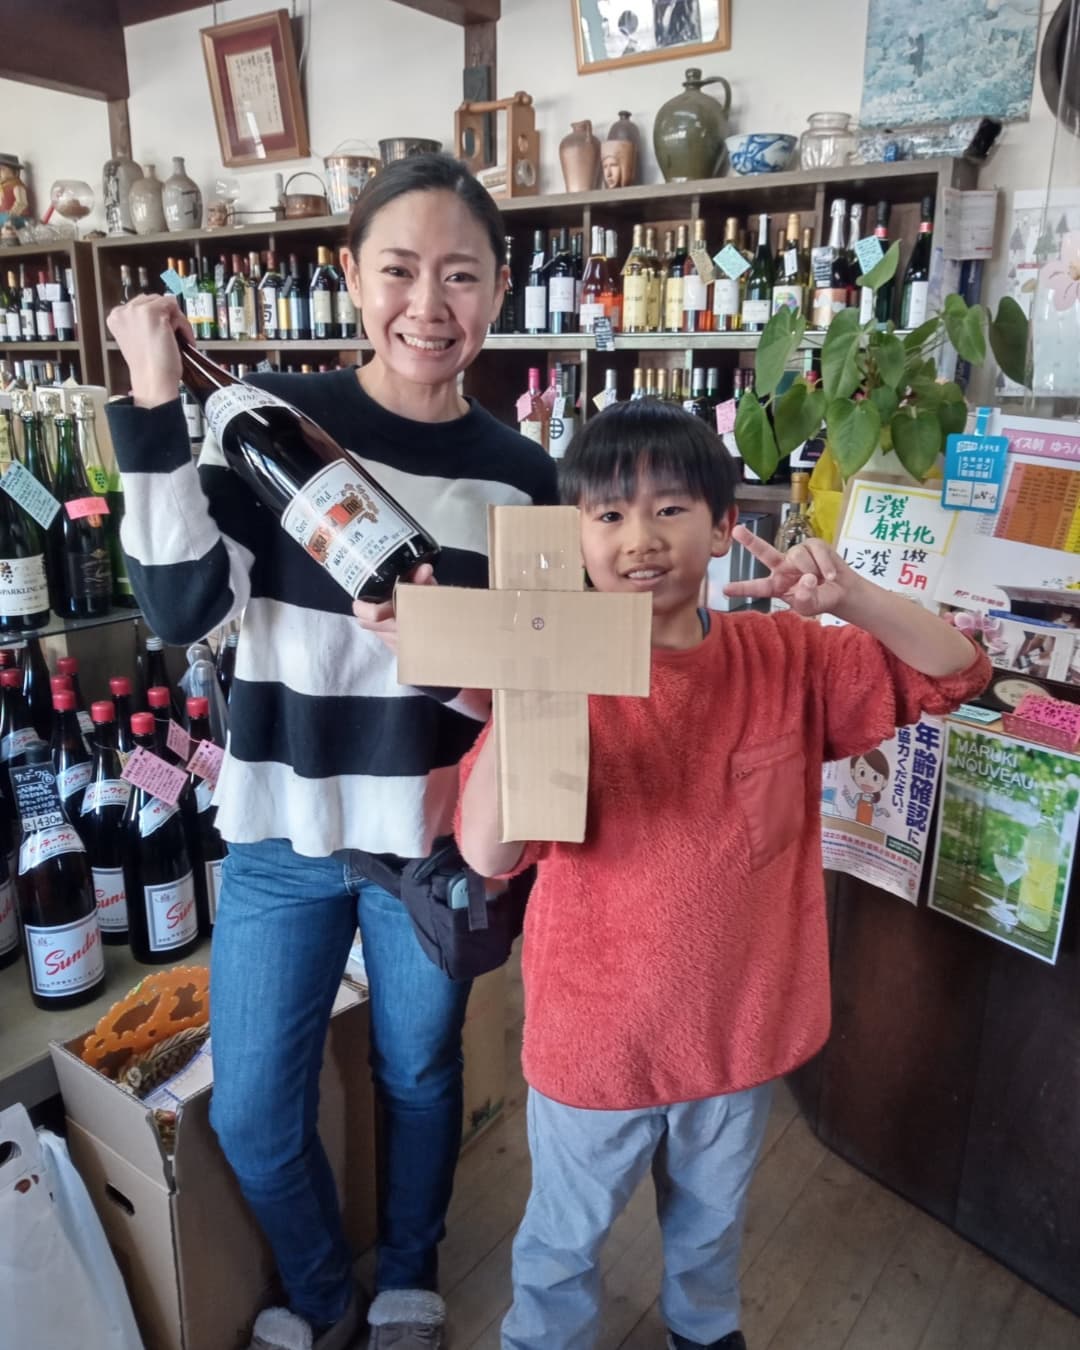 ⁡今年も店主が年末に、山梨県・甲州勝沼にある @katsunuma_daigaen #大雅園 さんに定番ワインを買い付けに行って来ました⁡⁡ぶどう園の跡取り娘でもあり農業大学で醸造学も学ばれた、確かな眼をお持ちの店長さん(隣の男の子は息子さんです)と相談しながら選んだ定番の3種のワインを、来年もぜひ、炭鳥ikadaでお楽しみ下さい🤗⁡⁡※2枚目は、道中柳沢峠からの富士山です⁡⁡http://ikadamitake.com営業時間・1月〜3月 11〜16時4月〜12月 11〜17時金曜定休(祭日は営業)Tel.0428-85-8726#むかし鳥 #体験型 #炭鳥ikada #ばくだん #mitake #御岳 #御嶽駅 #秩父多摩甲斐国立公園 #御岳山 #御岳山ロックガーデン #武蔵御嶽神社 #御岳渓谷 #御岳ランチ #奥多摩フィッシングセンター #奥多摩 #奥多摩湖 #日原鍾乳洞 #バイク #ロードバイク #サイクリング #カヌー #カヤック #ラフティング #riversup #クライミング #ペット可 #nocovid19 #甲州勝沼 #甲州ワイン